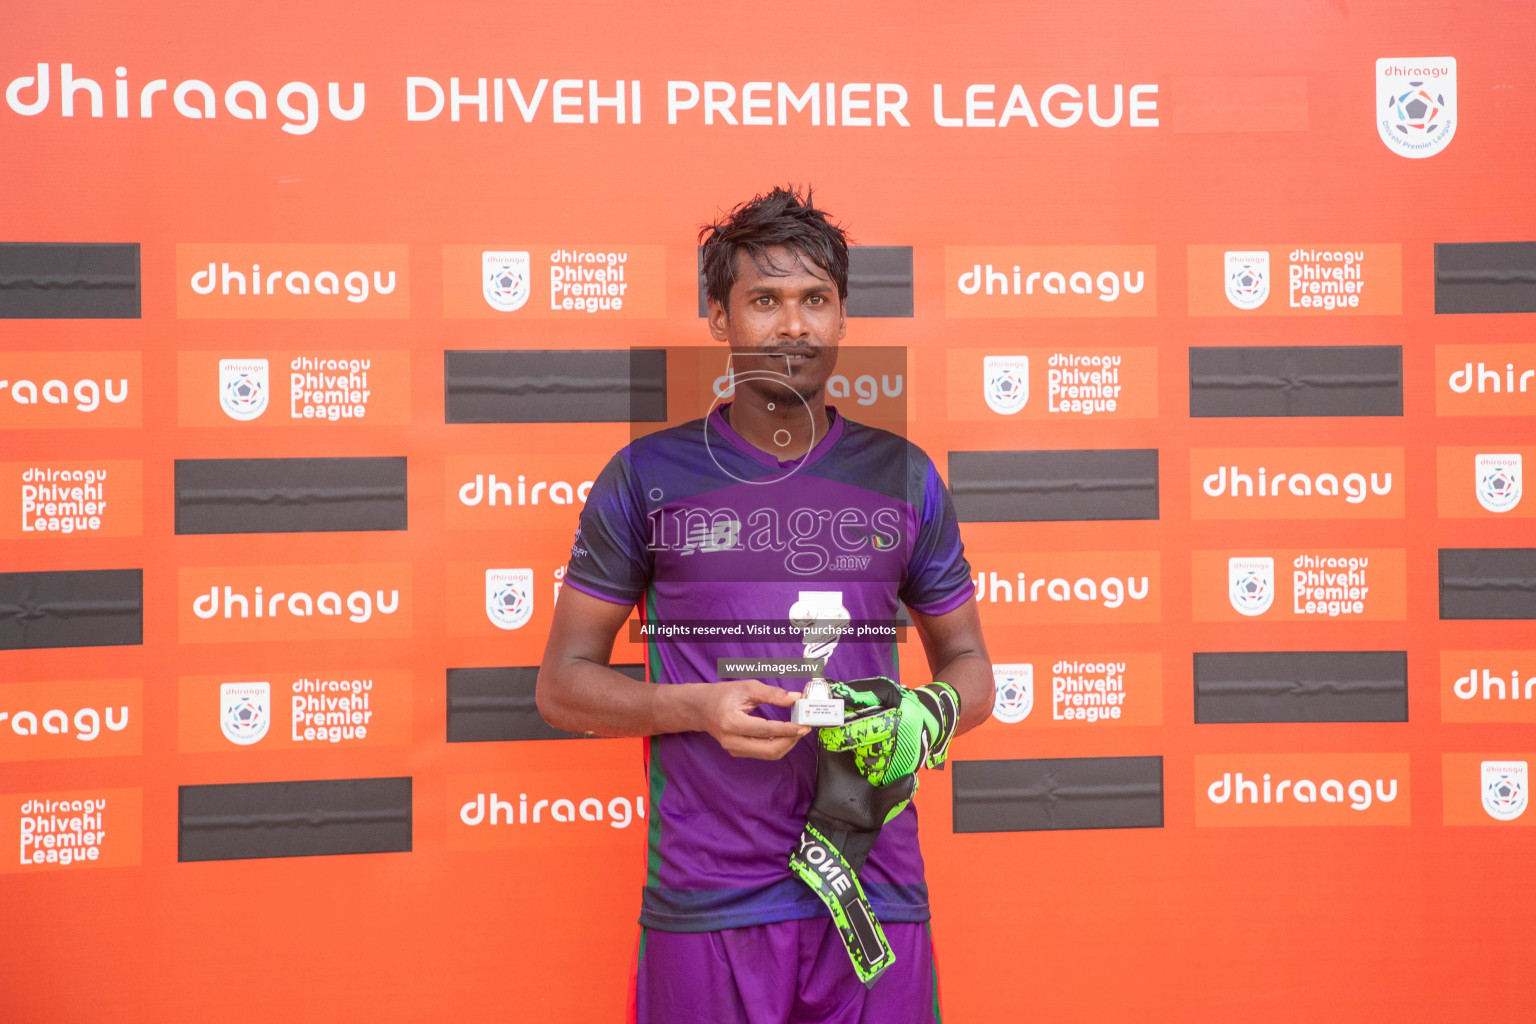 Da Grande SC vs Foakaidhoo FC in Dhiraagu Dhivehi Premier League 2019 held in Male', Maldives on 20th June 2019 Photos: Shuadh Abdul Sattar/images.mv